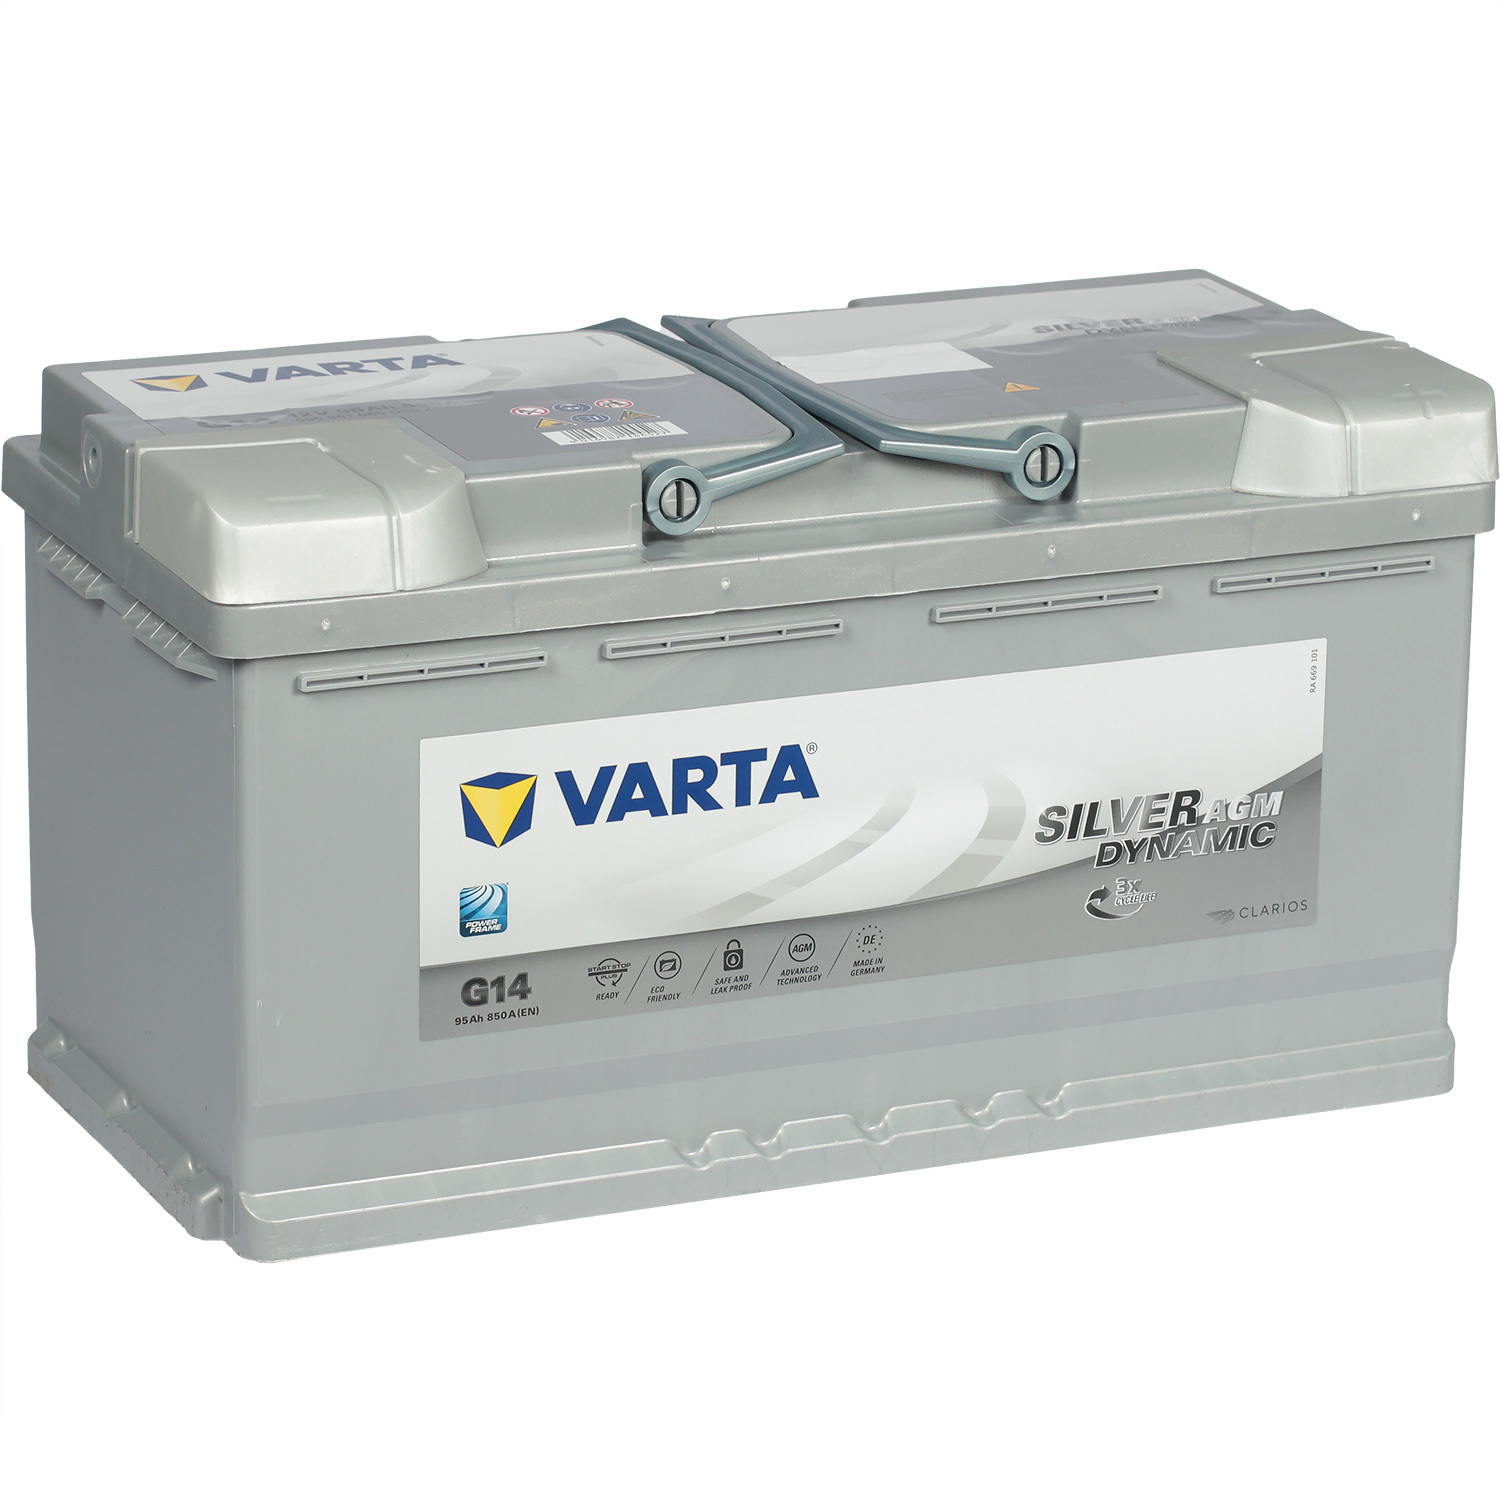 Varta Автомобильный аккумулятор Varta AGM G14 95 Ач обратная полярность L5 цена и фото